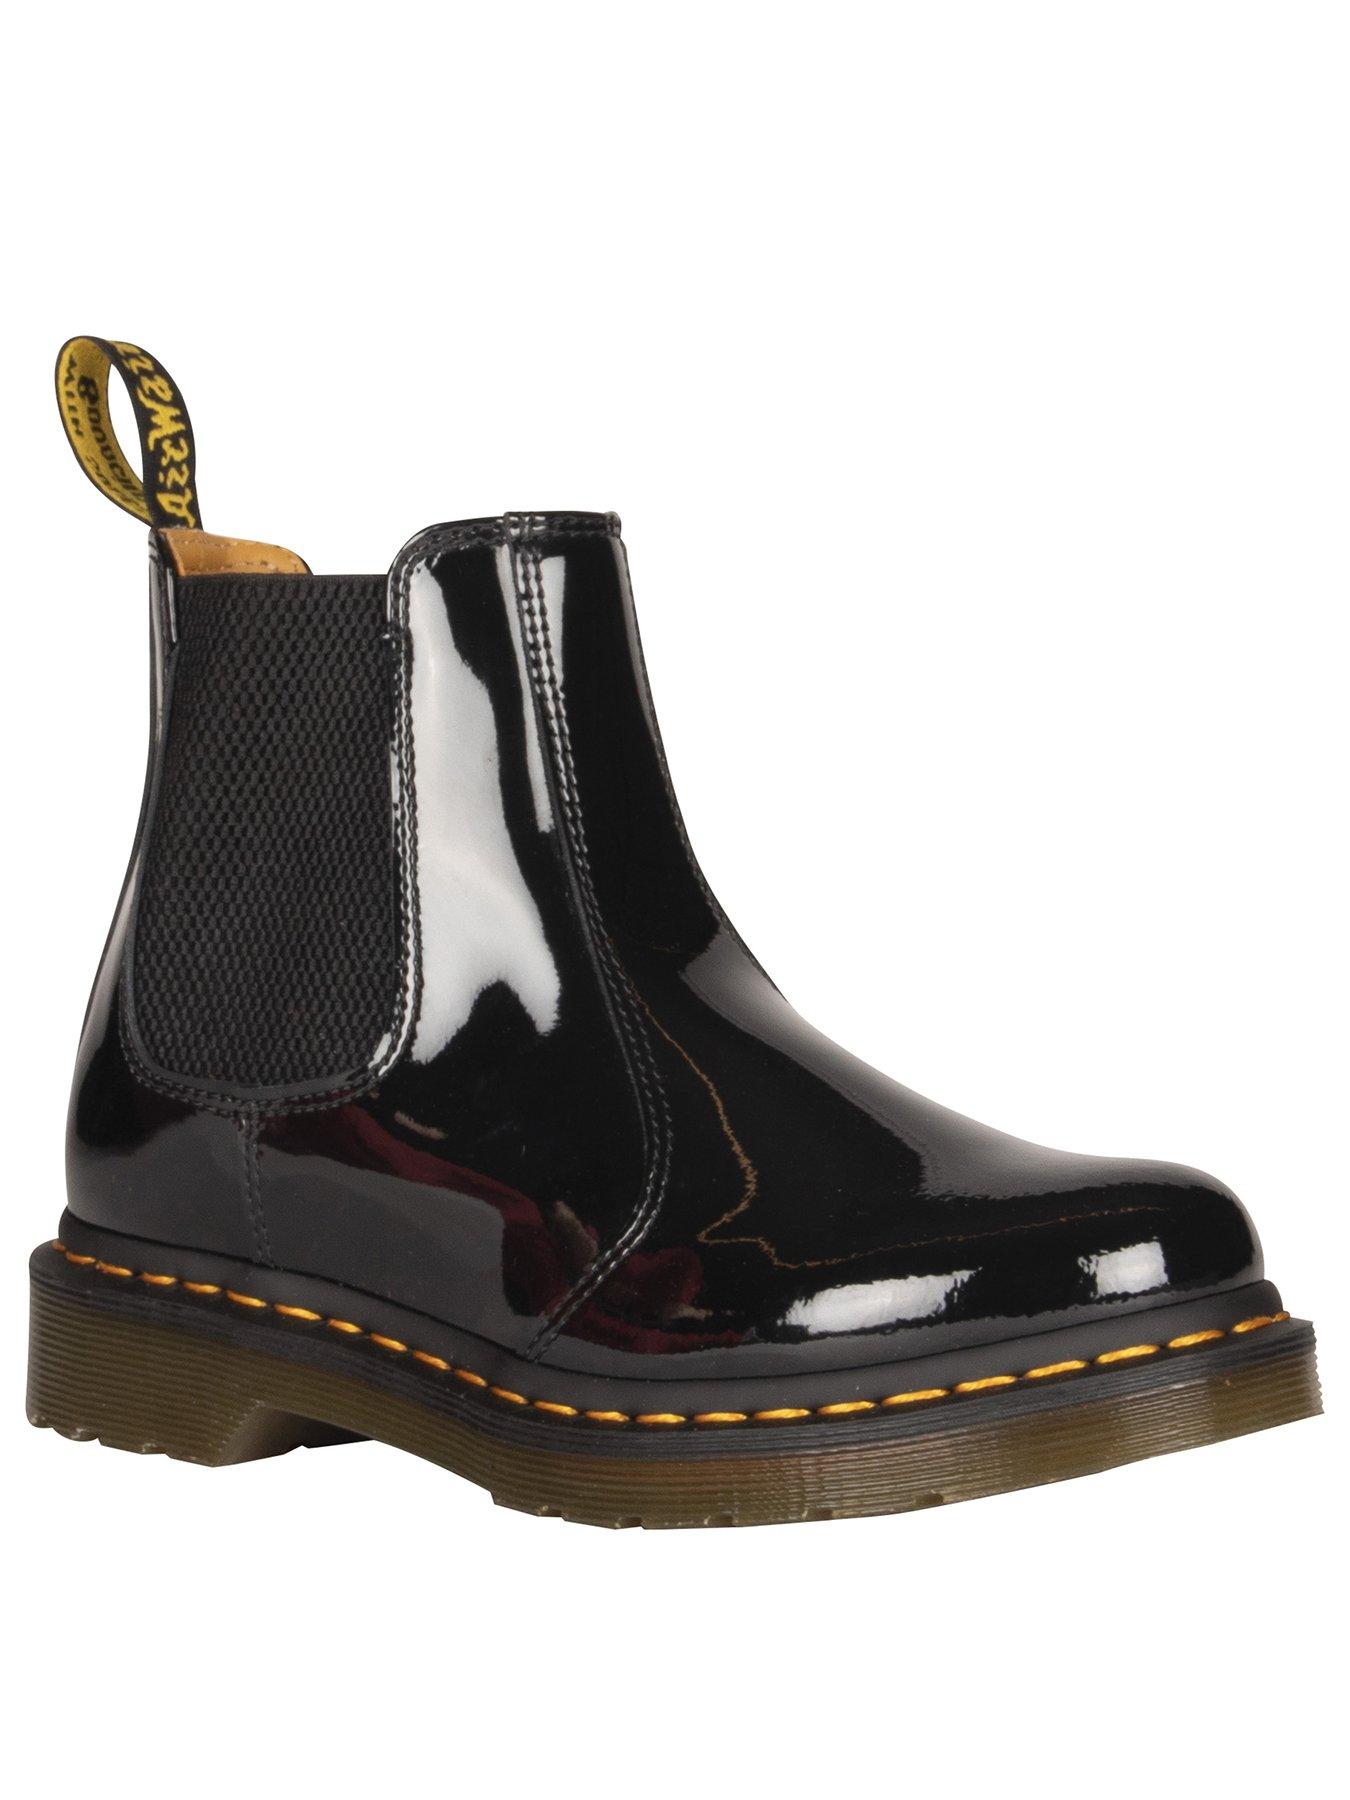 black dm boots size 6